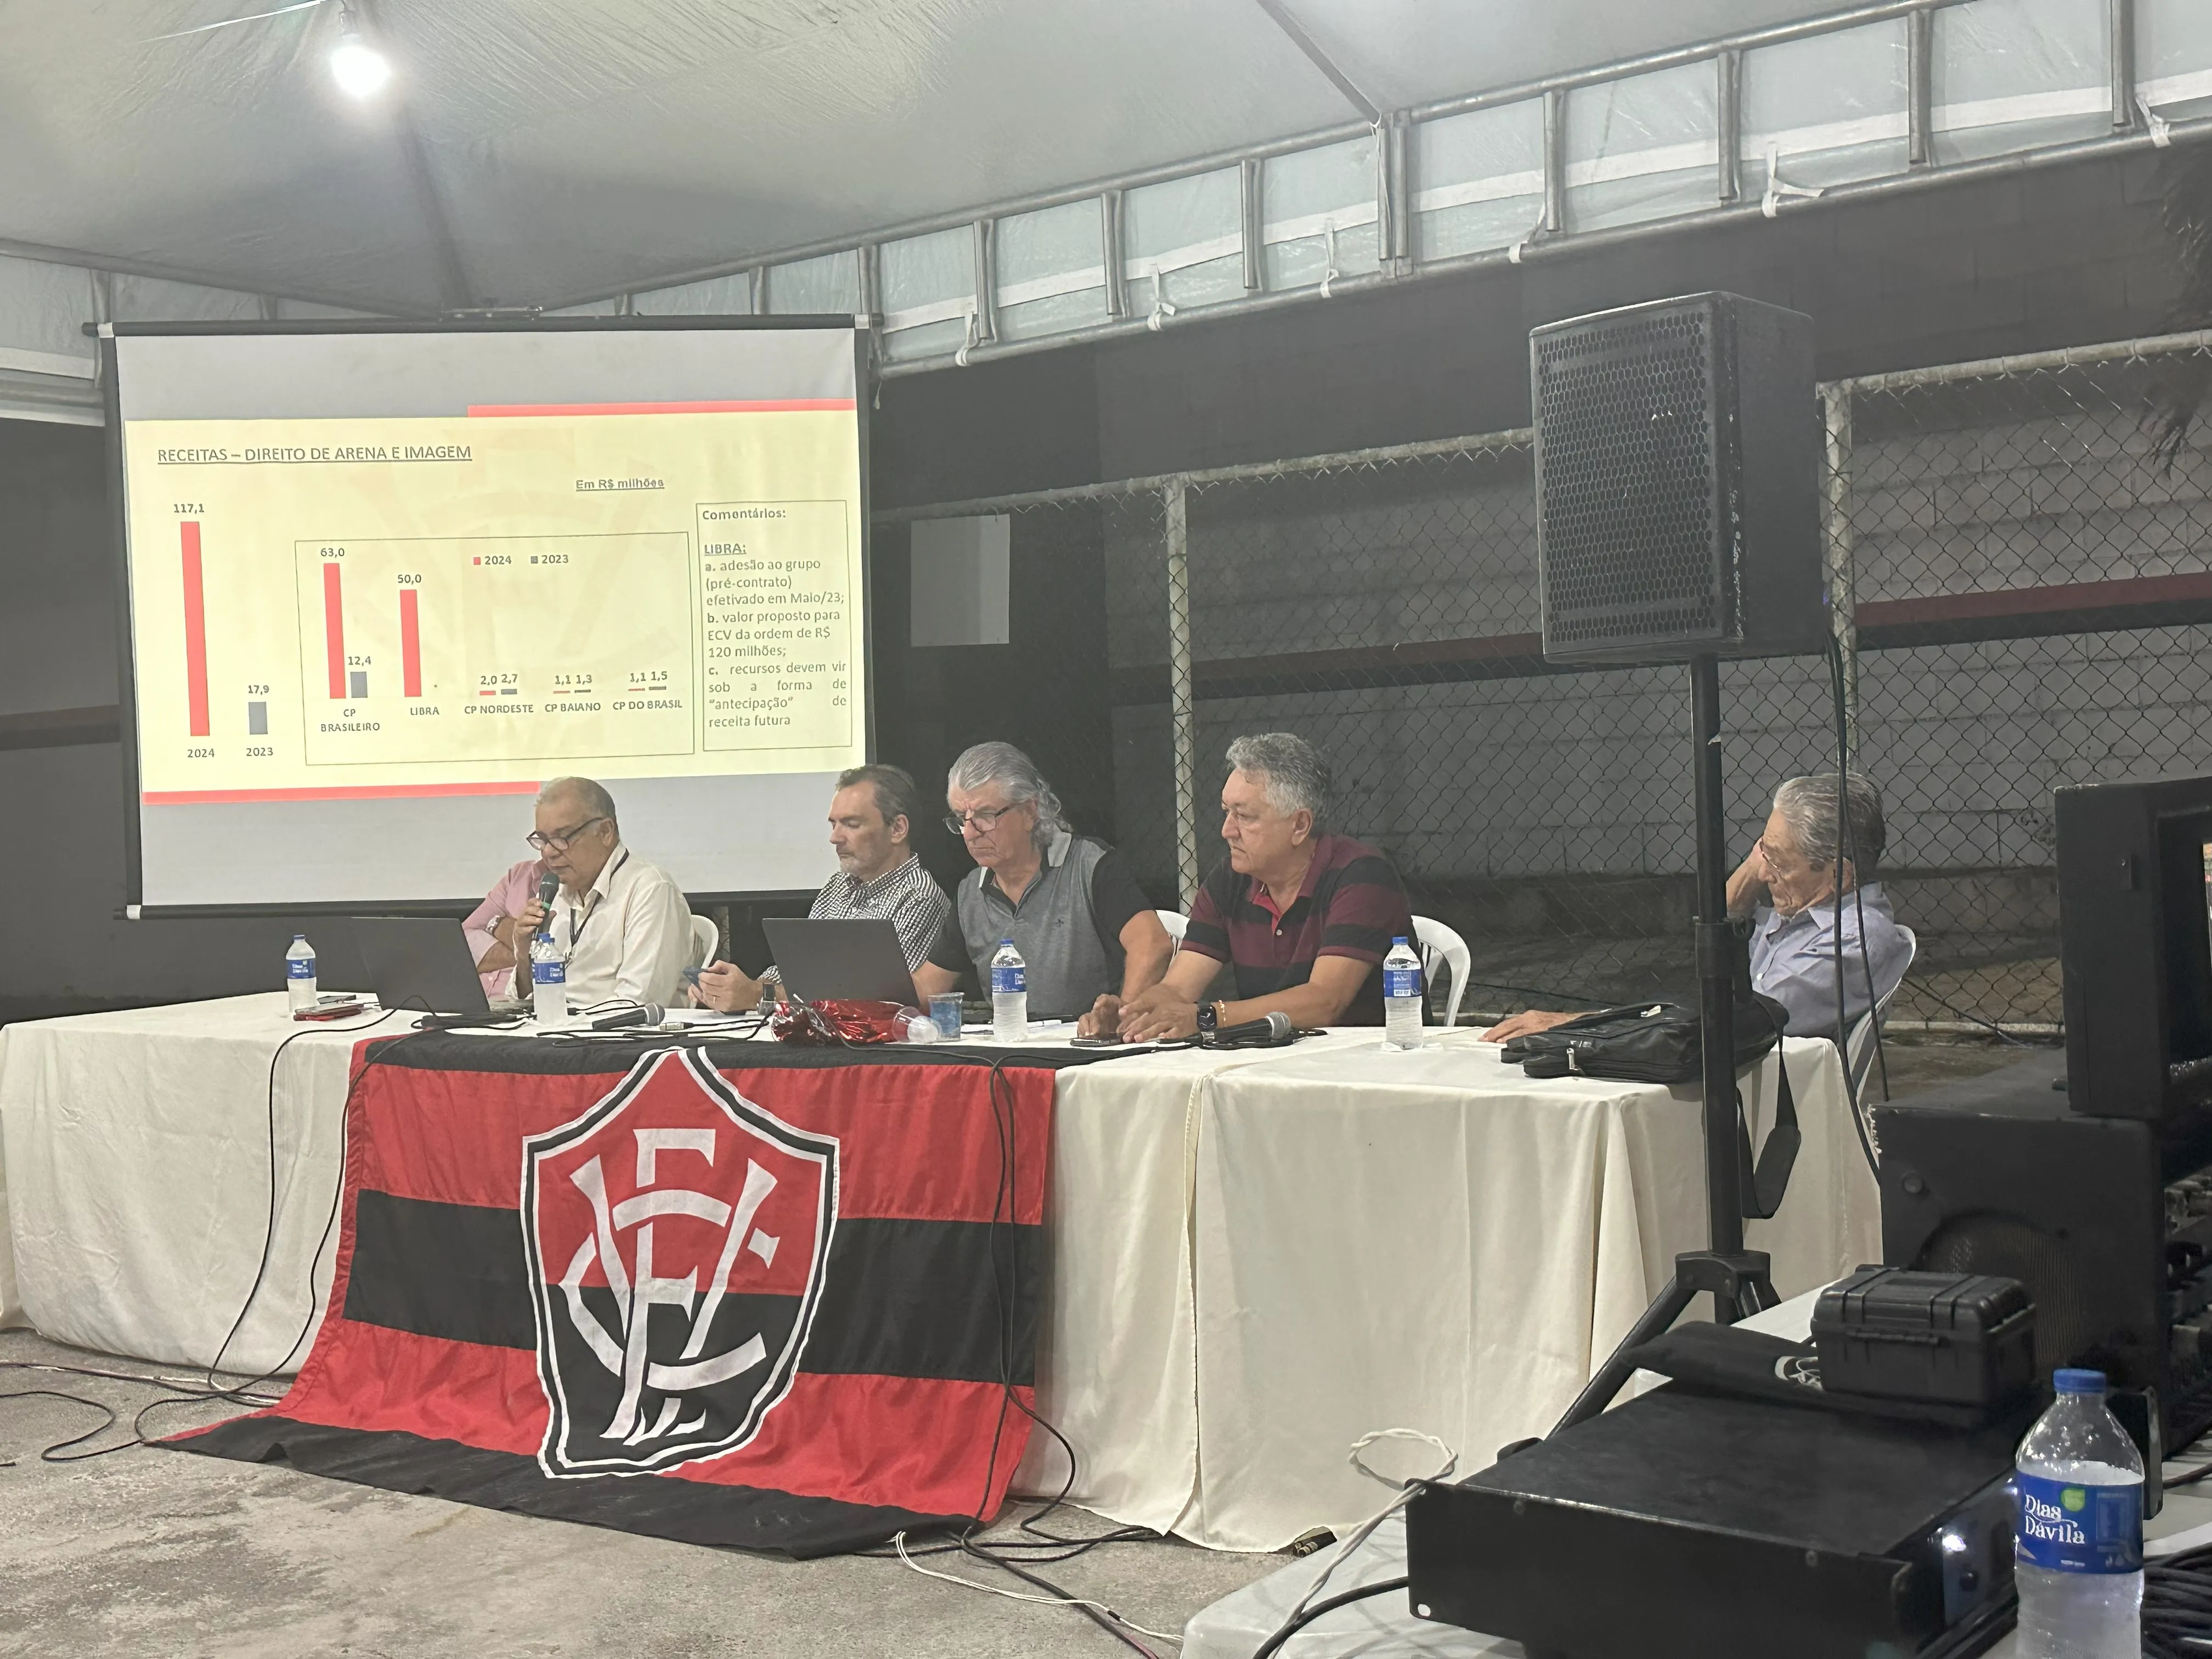 Clube de Basquete de Viana conquista mais uma vitória no campeonato